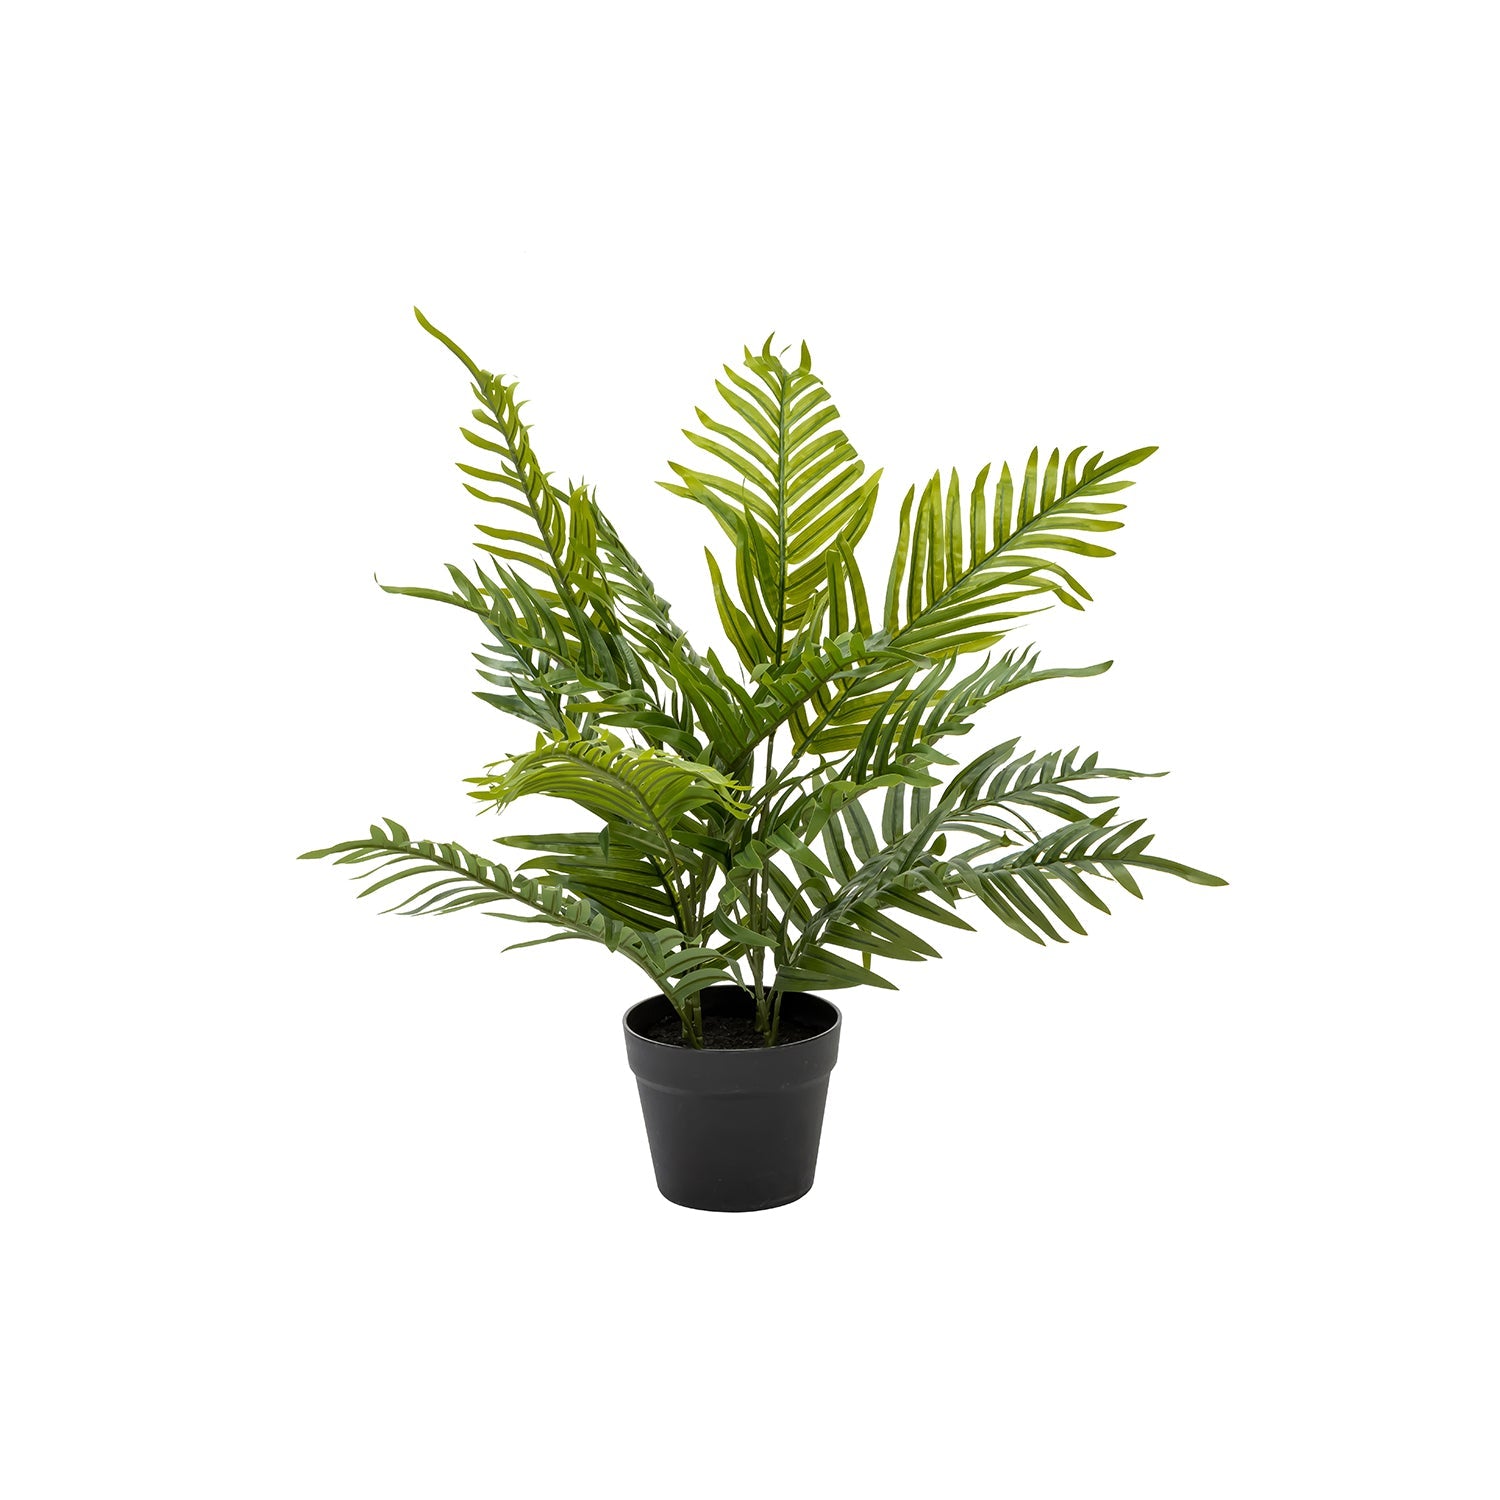 PALM PLANT IN POT - 60cm